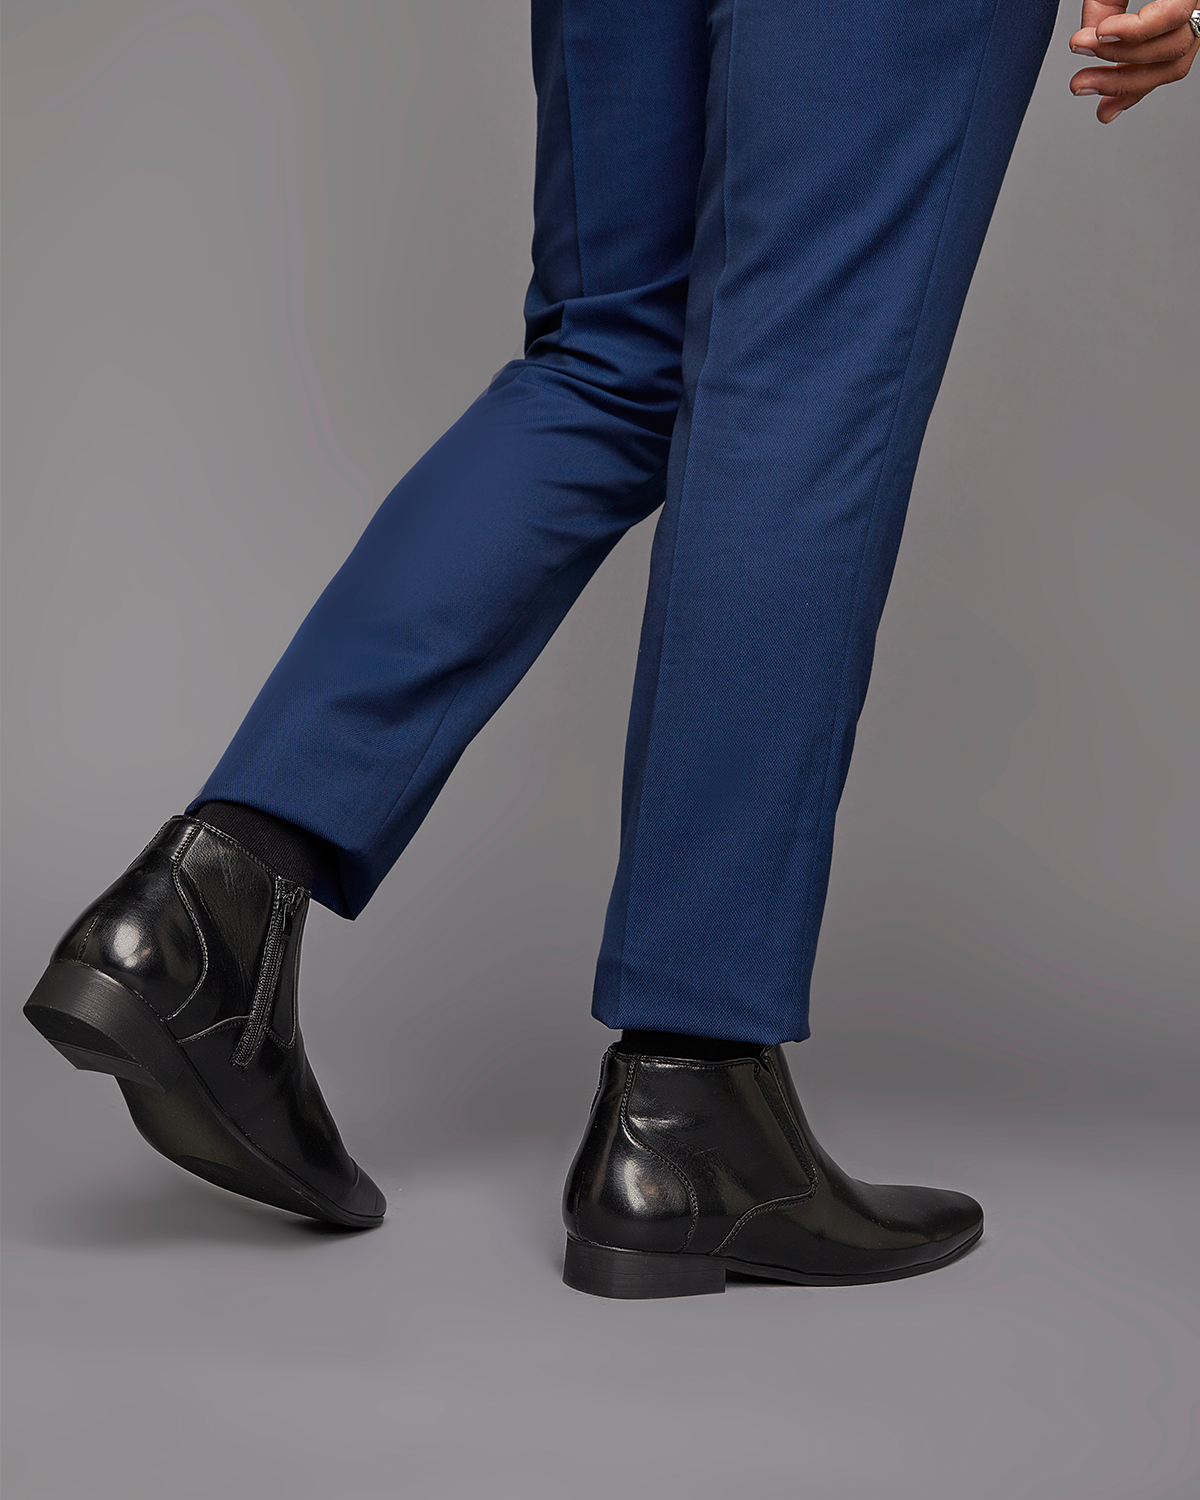 Uncut Shoes Pattinson Black | Men's Boot | Dress Boot | Office | Work